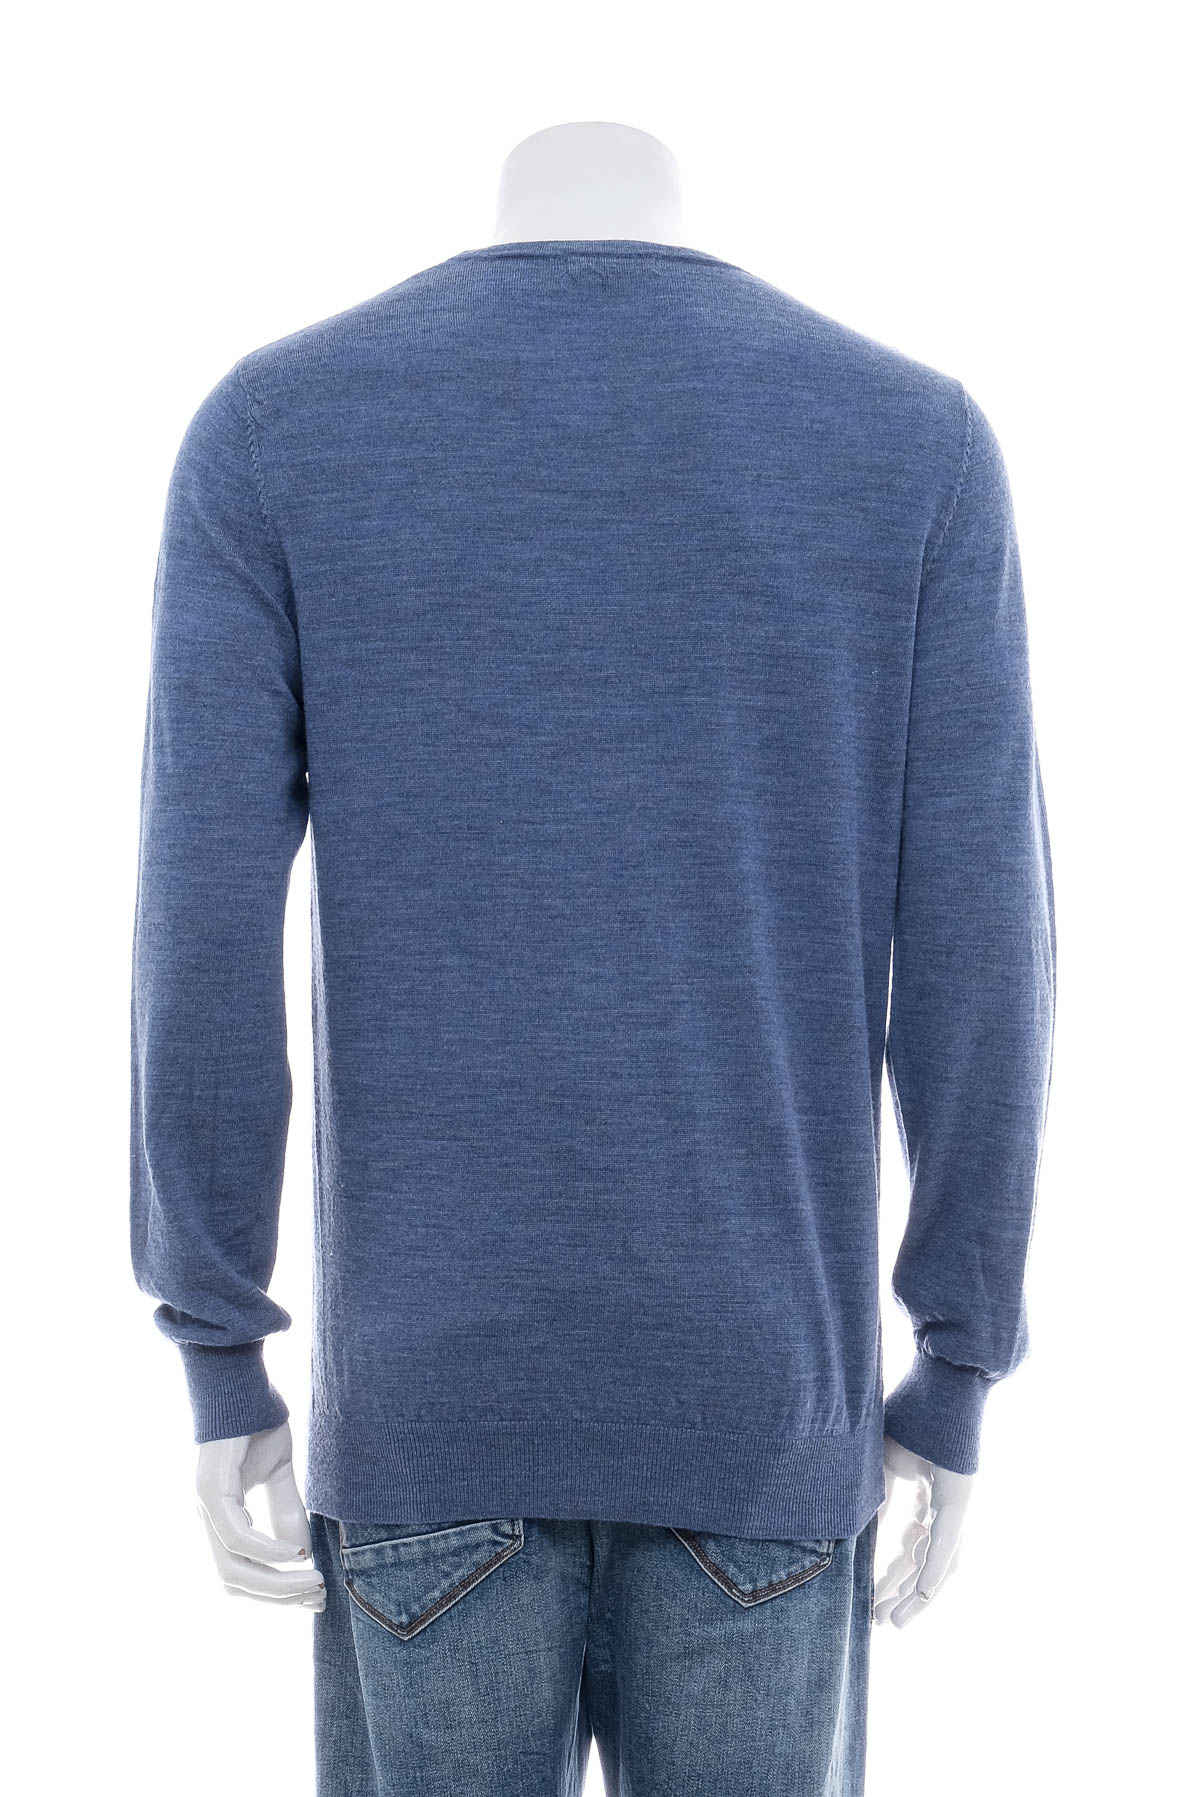 Men's sweater - Dressmann - 1